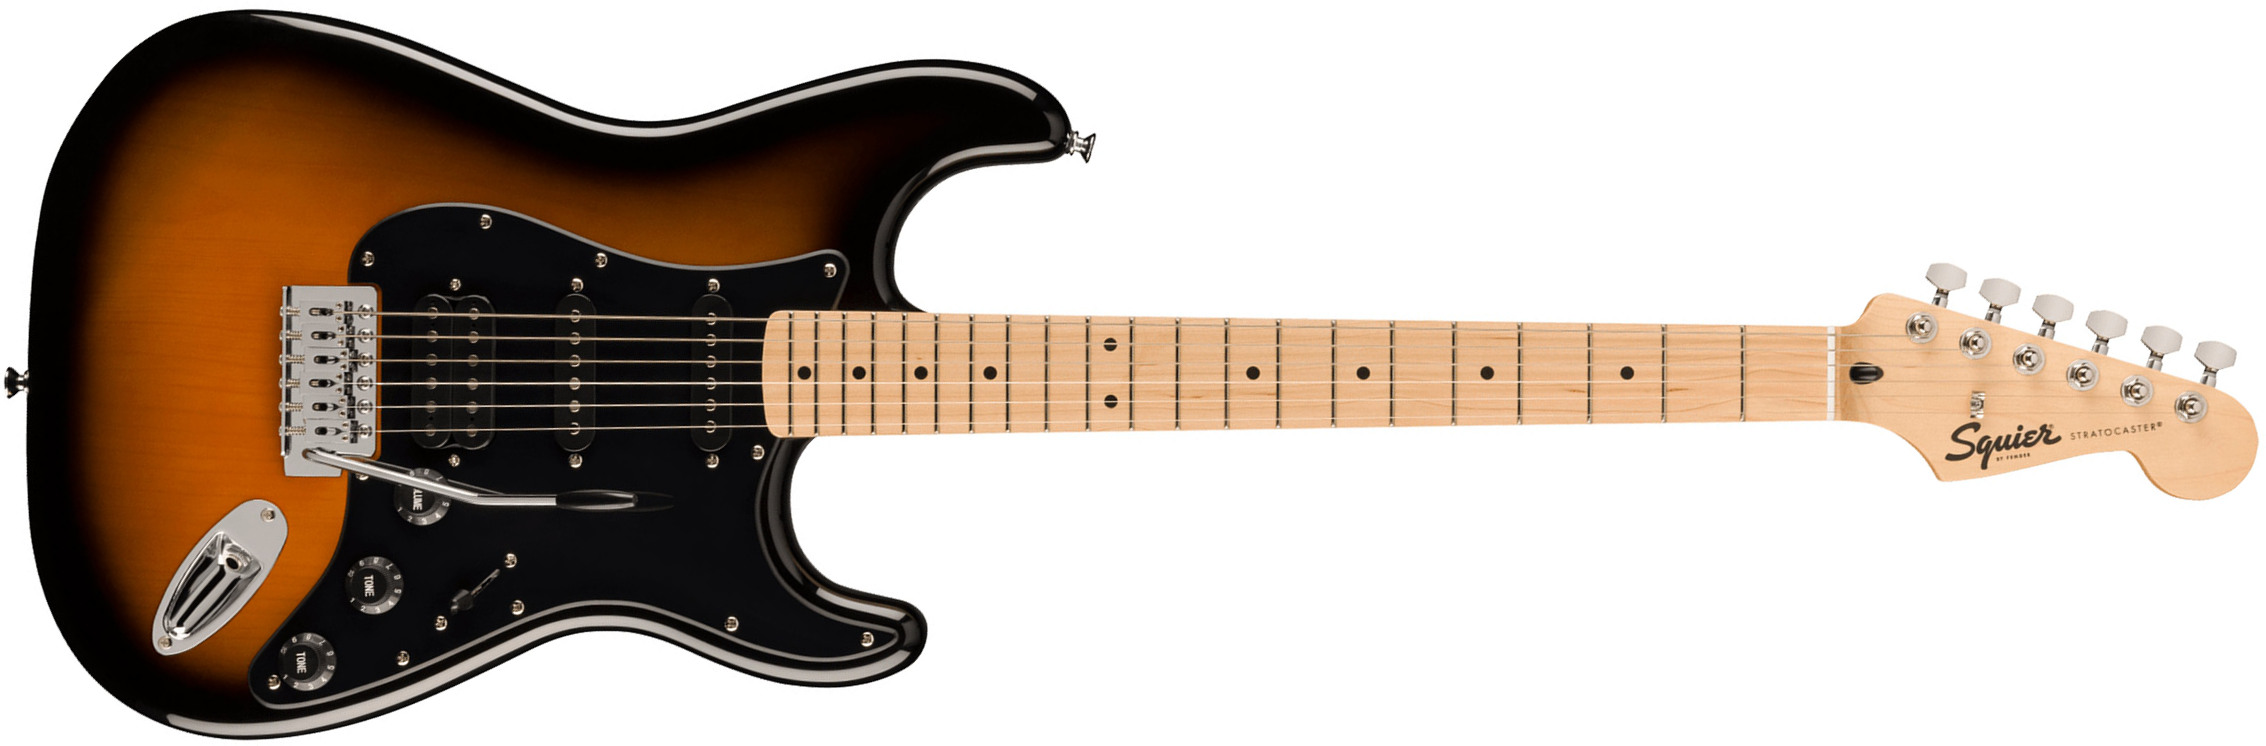 Squier Strat Sonic Hss Trem Mn - 2-color Sunburst - Guitarra eléctrica con forma de str. - Main picture